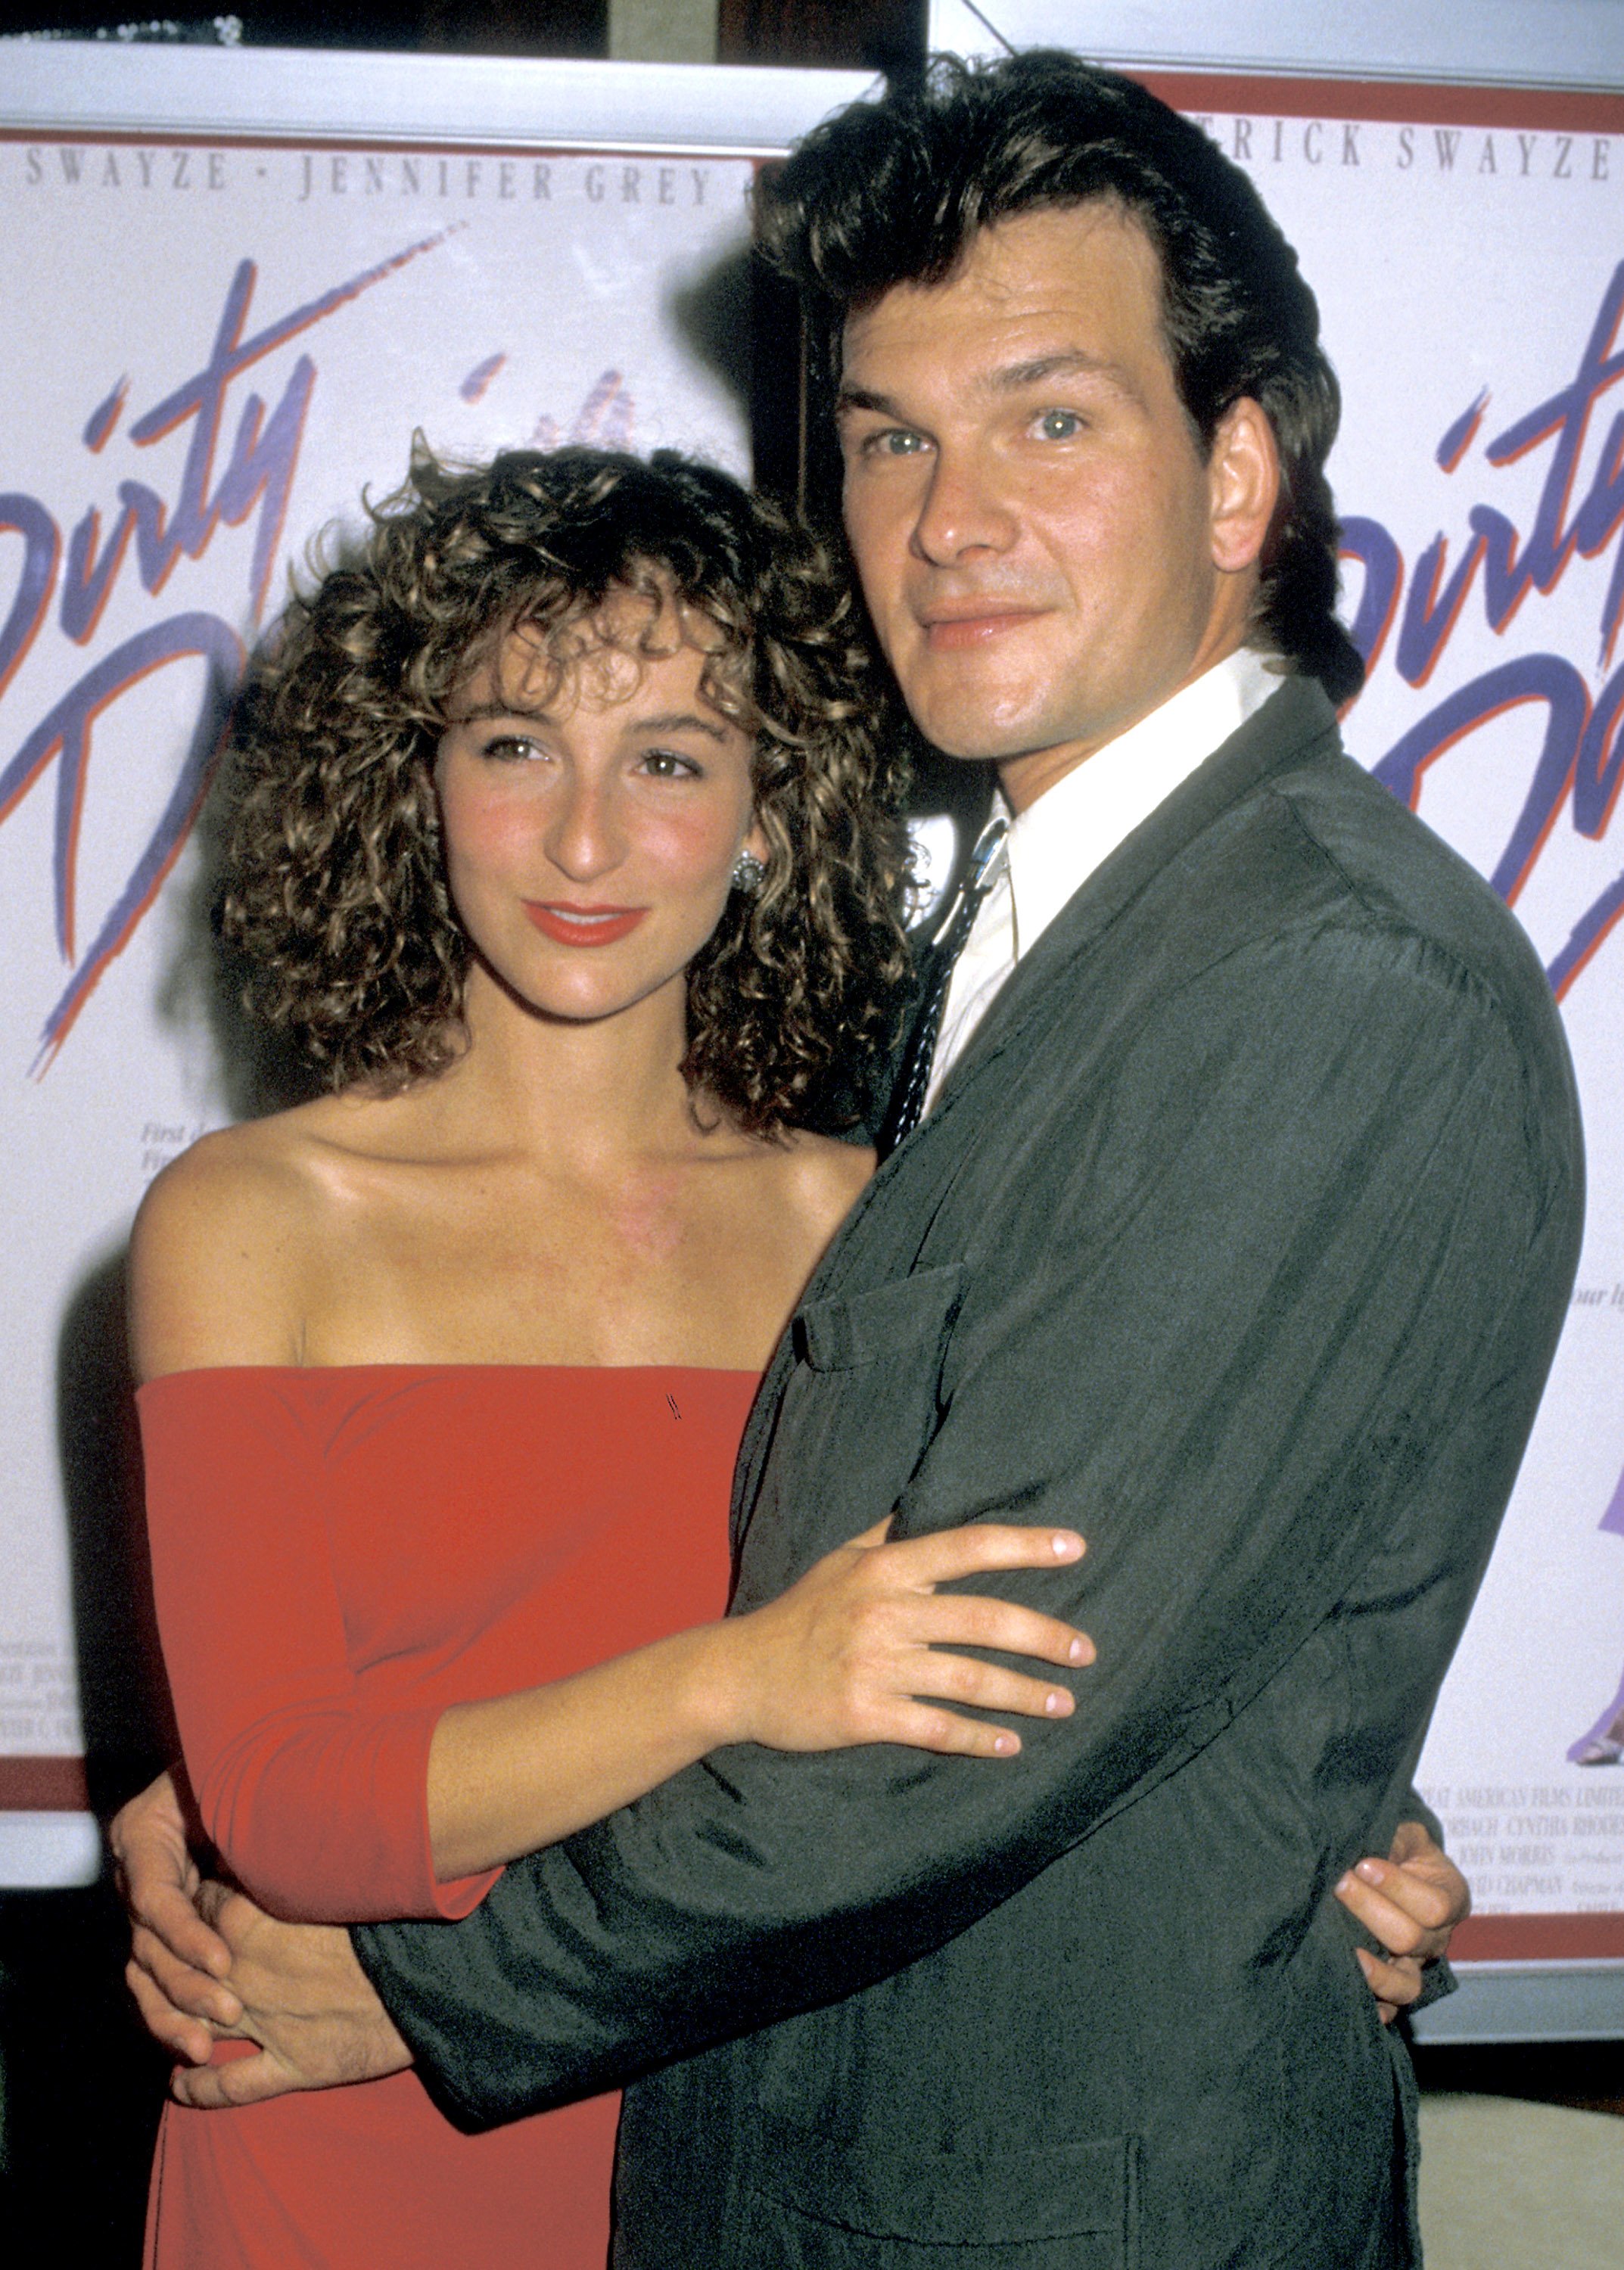 Jennifer Grey und Patrick Swayze während der Premiere von "Dirty Dancing" im Gemini Theater am 17. August 1987 in New York City. | Quelle: Getty Images